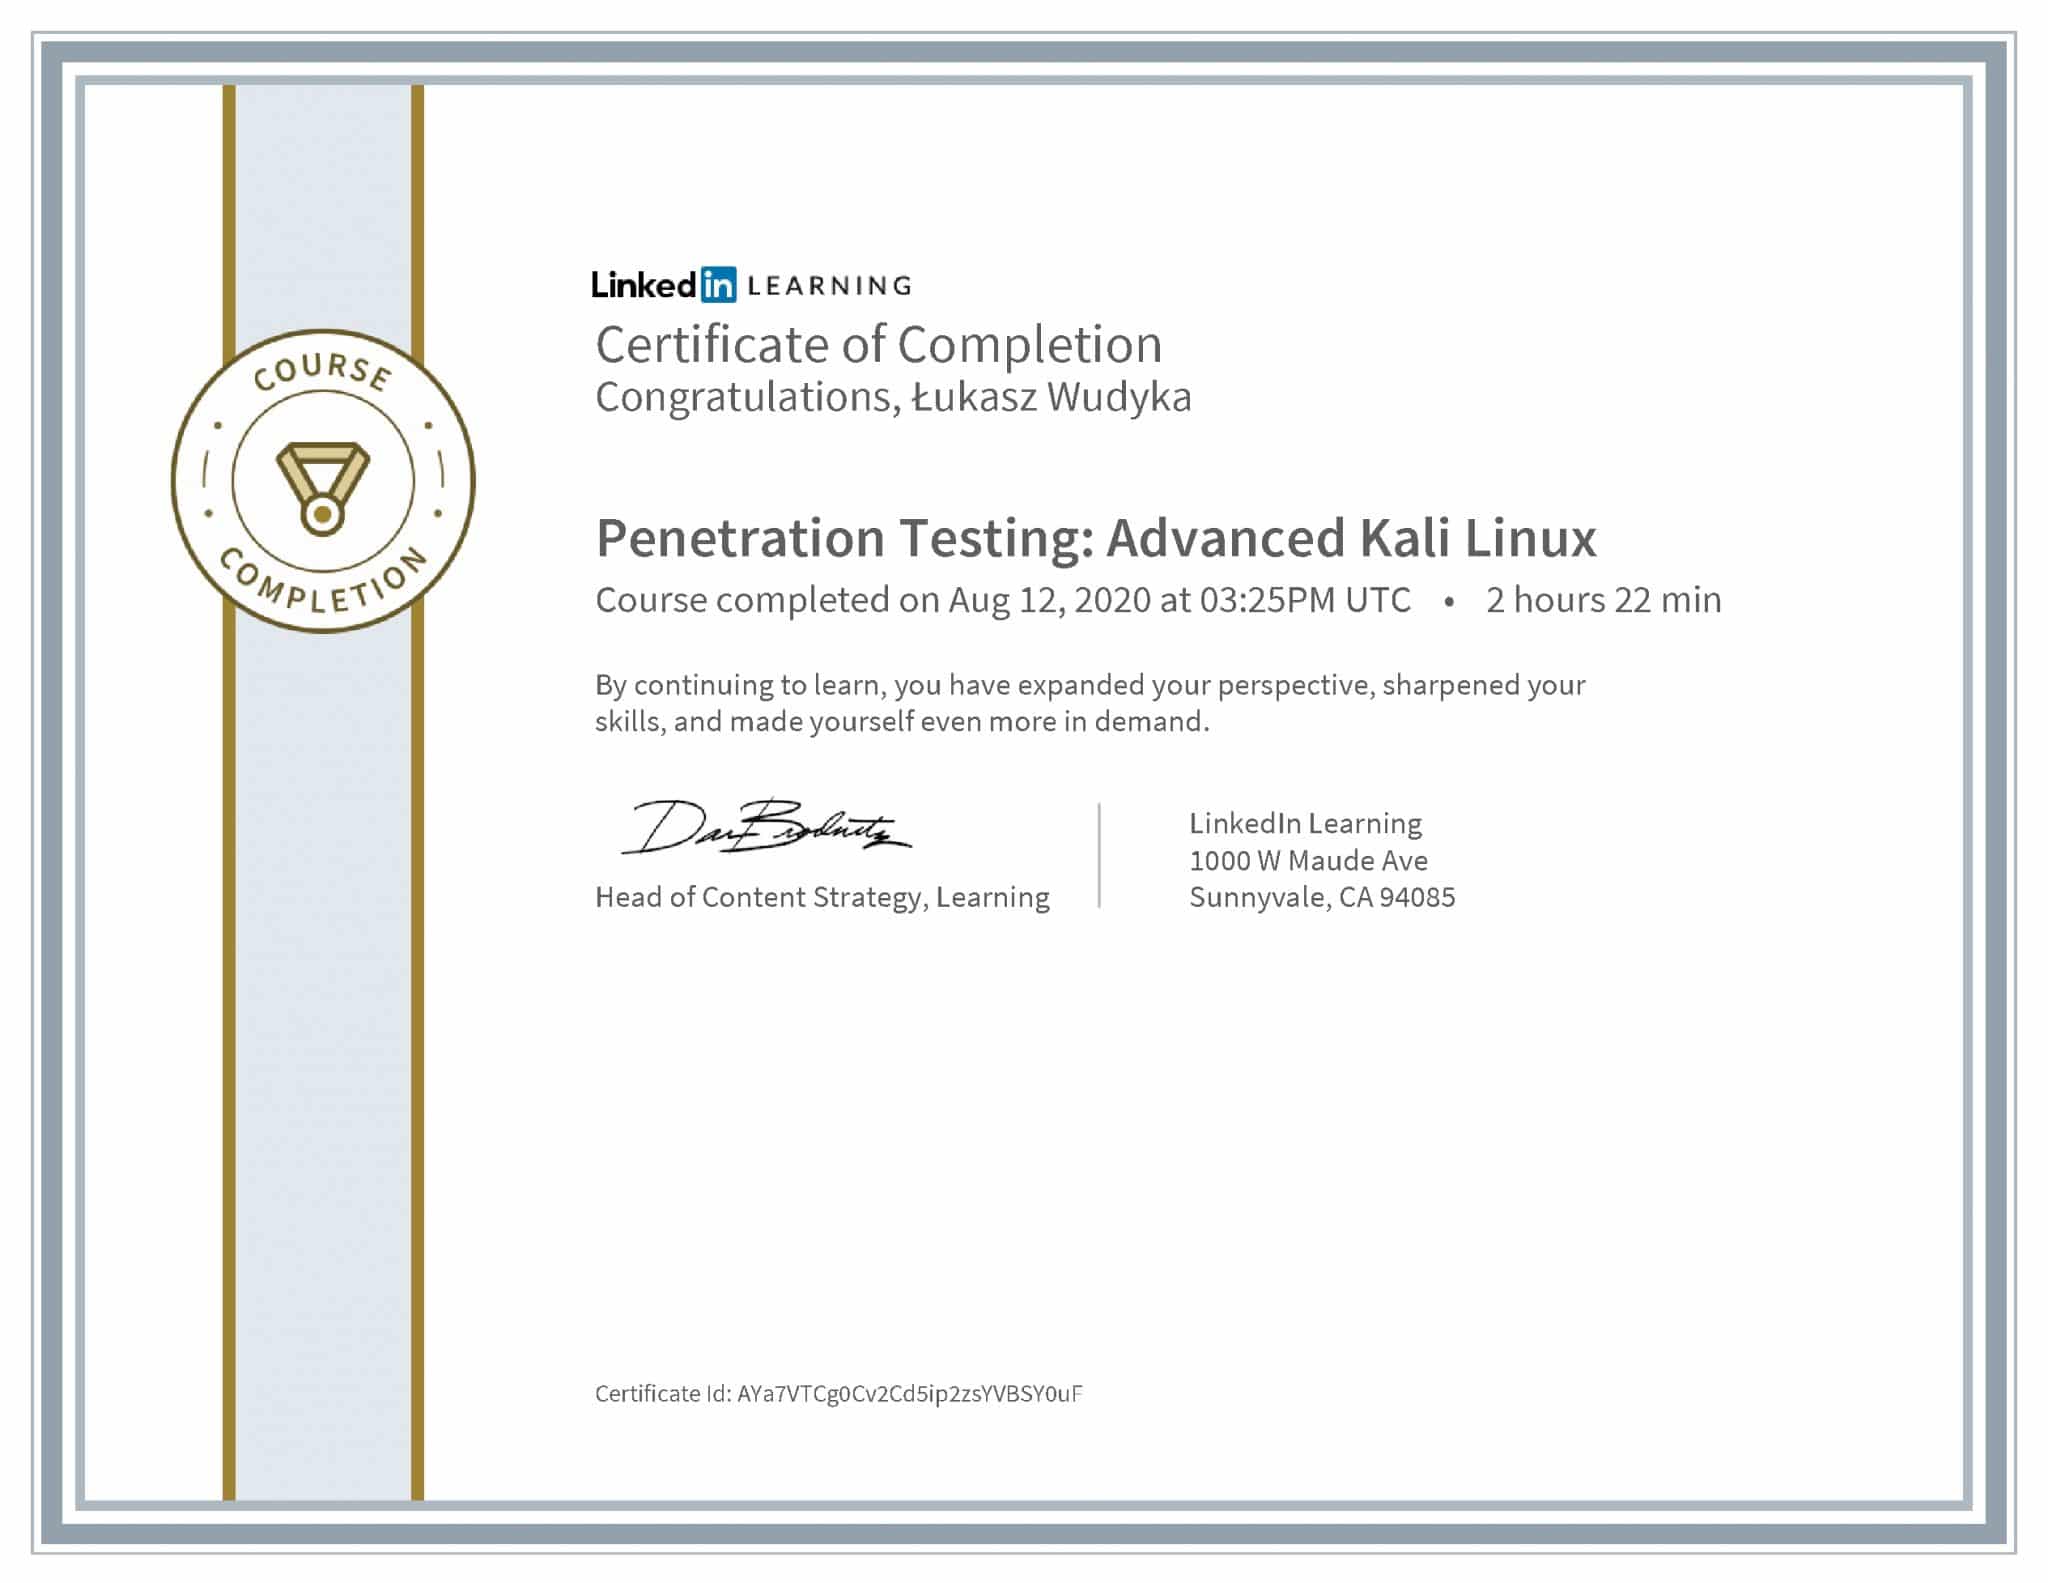 Łukasz Wudyka certyfikat LinkedIn Penetration Testing: Advanced Kali Linux